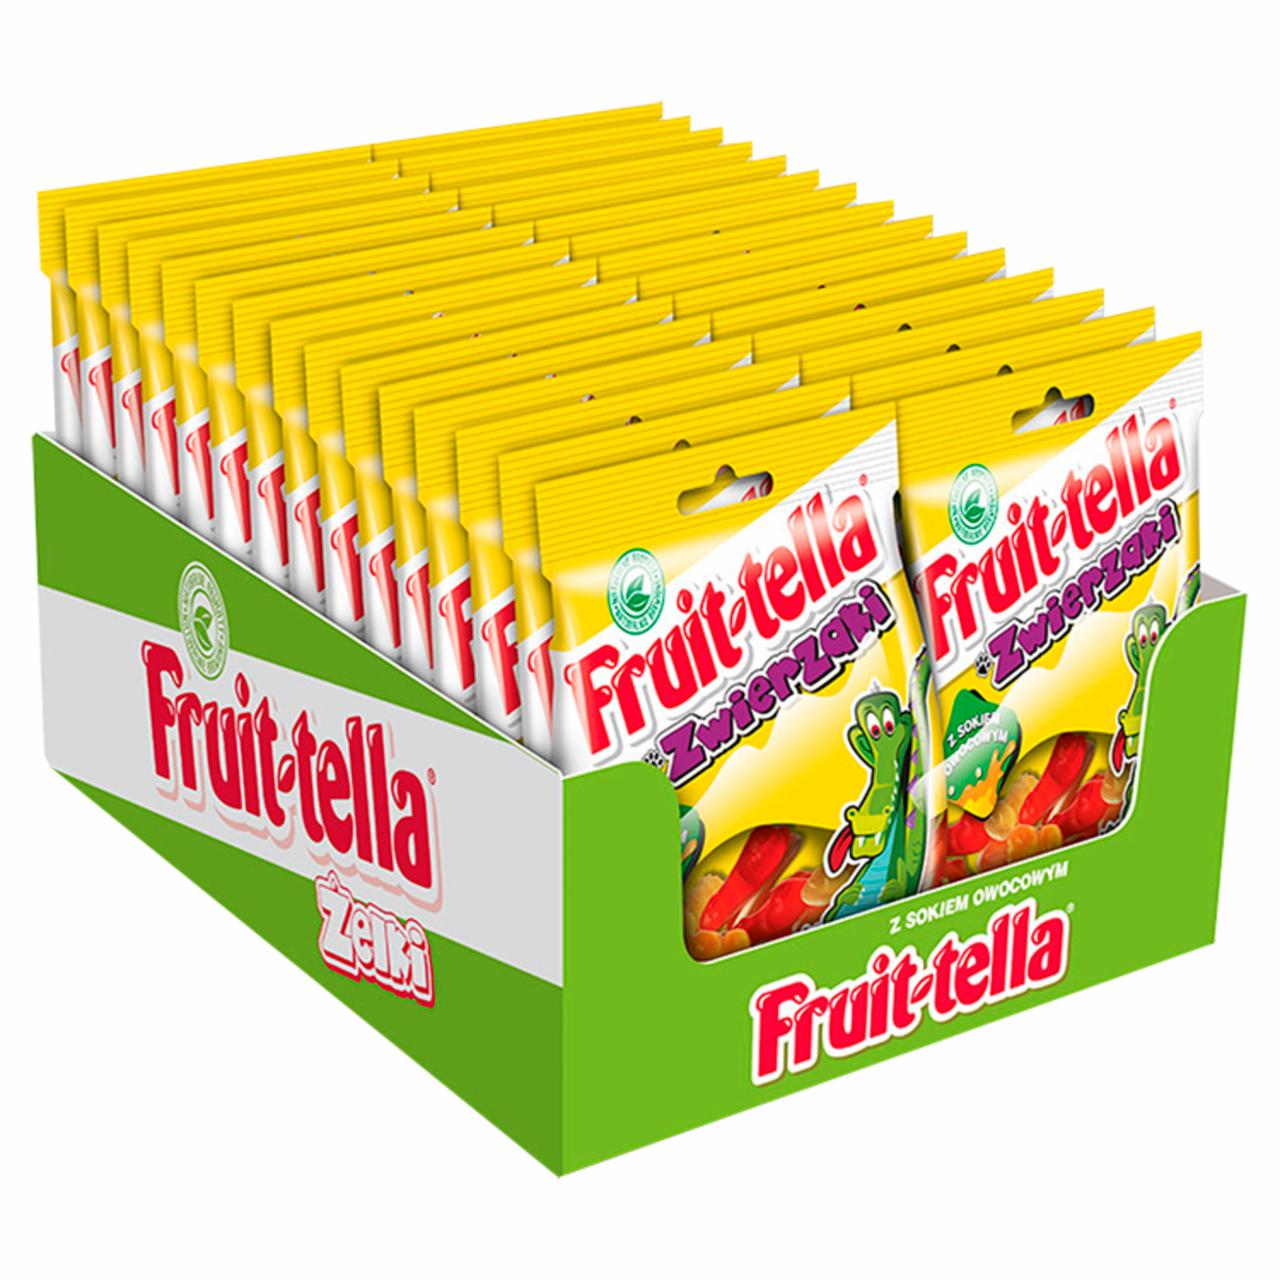 Zdjęcia - Fruittella Zwierzaki Żelki o smaku owocowym 30 x 90 g